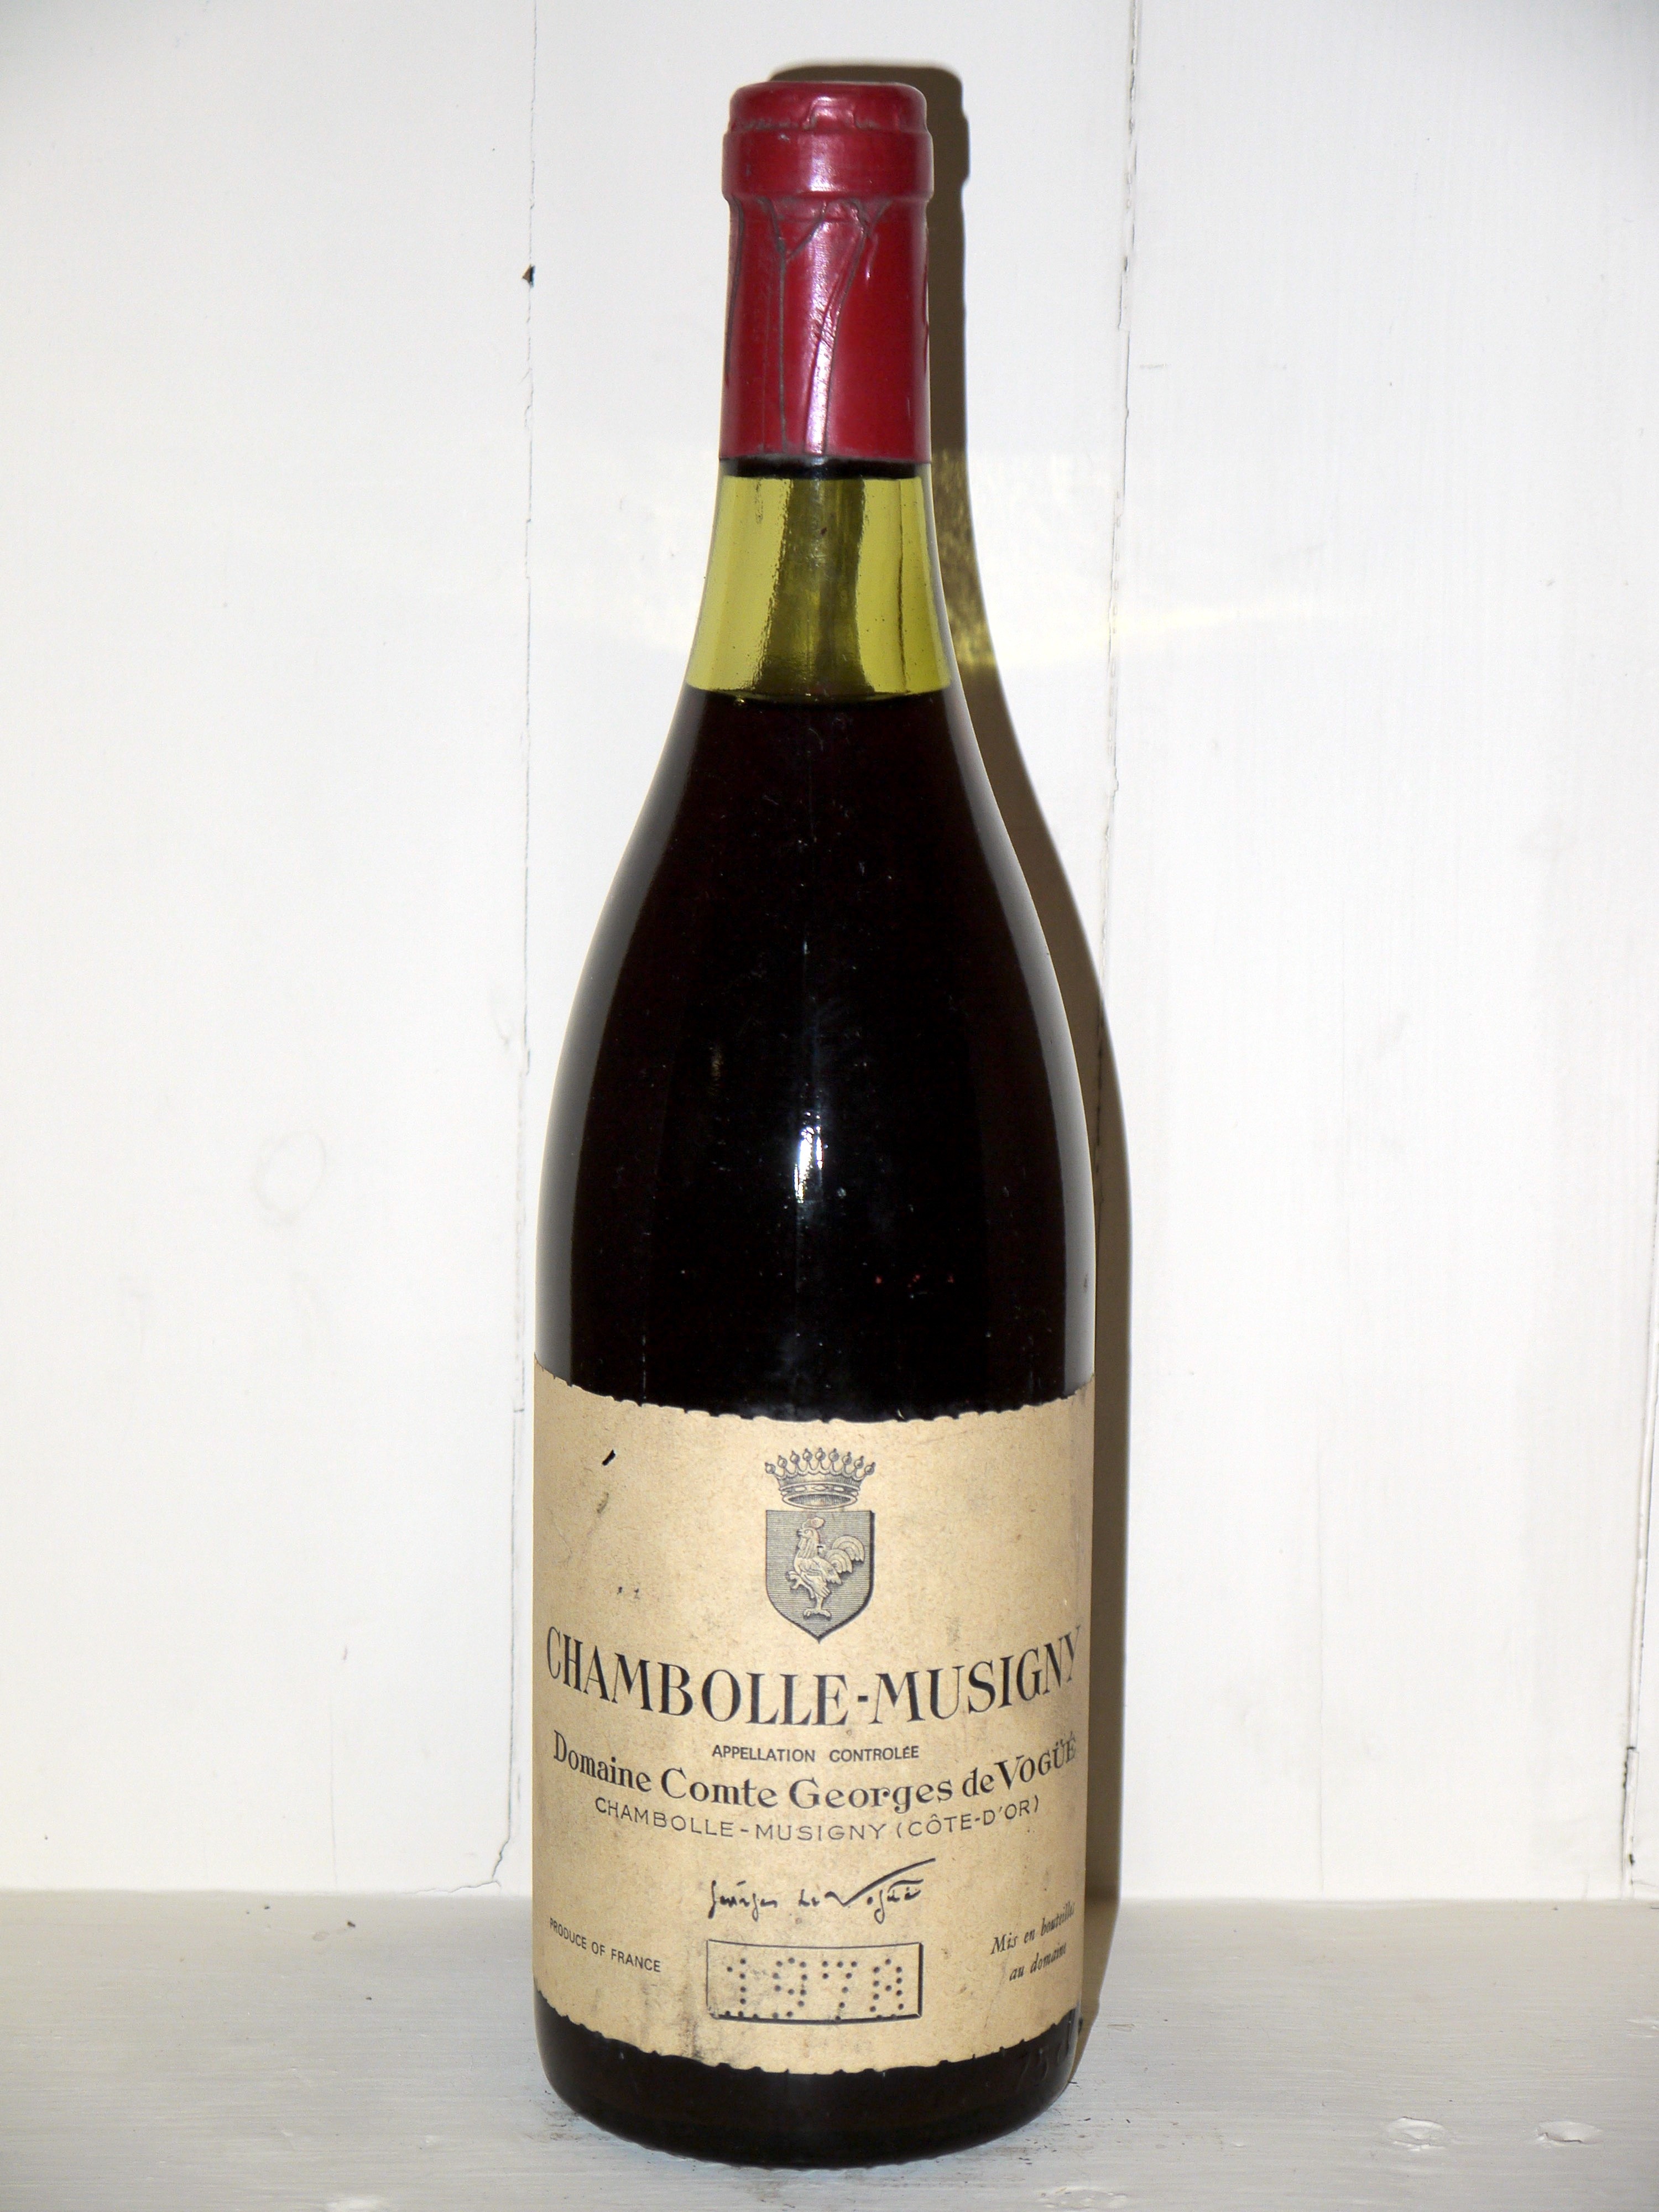 Chambolle-Musigny 1978 Domaine Comte Georges de Vogüé - great wine